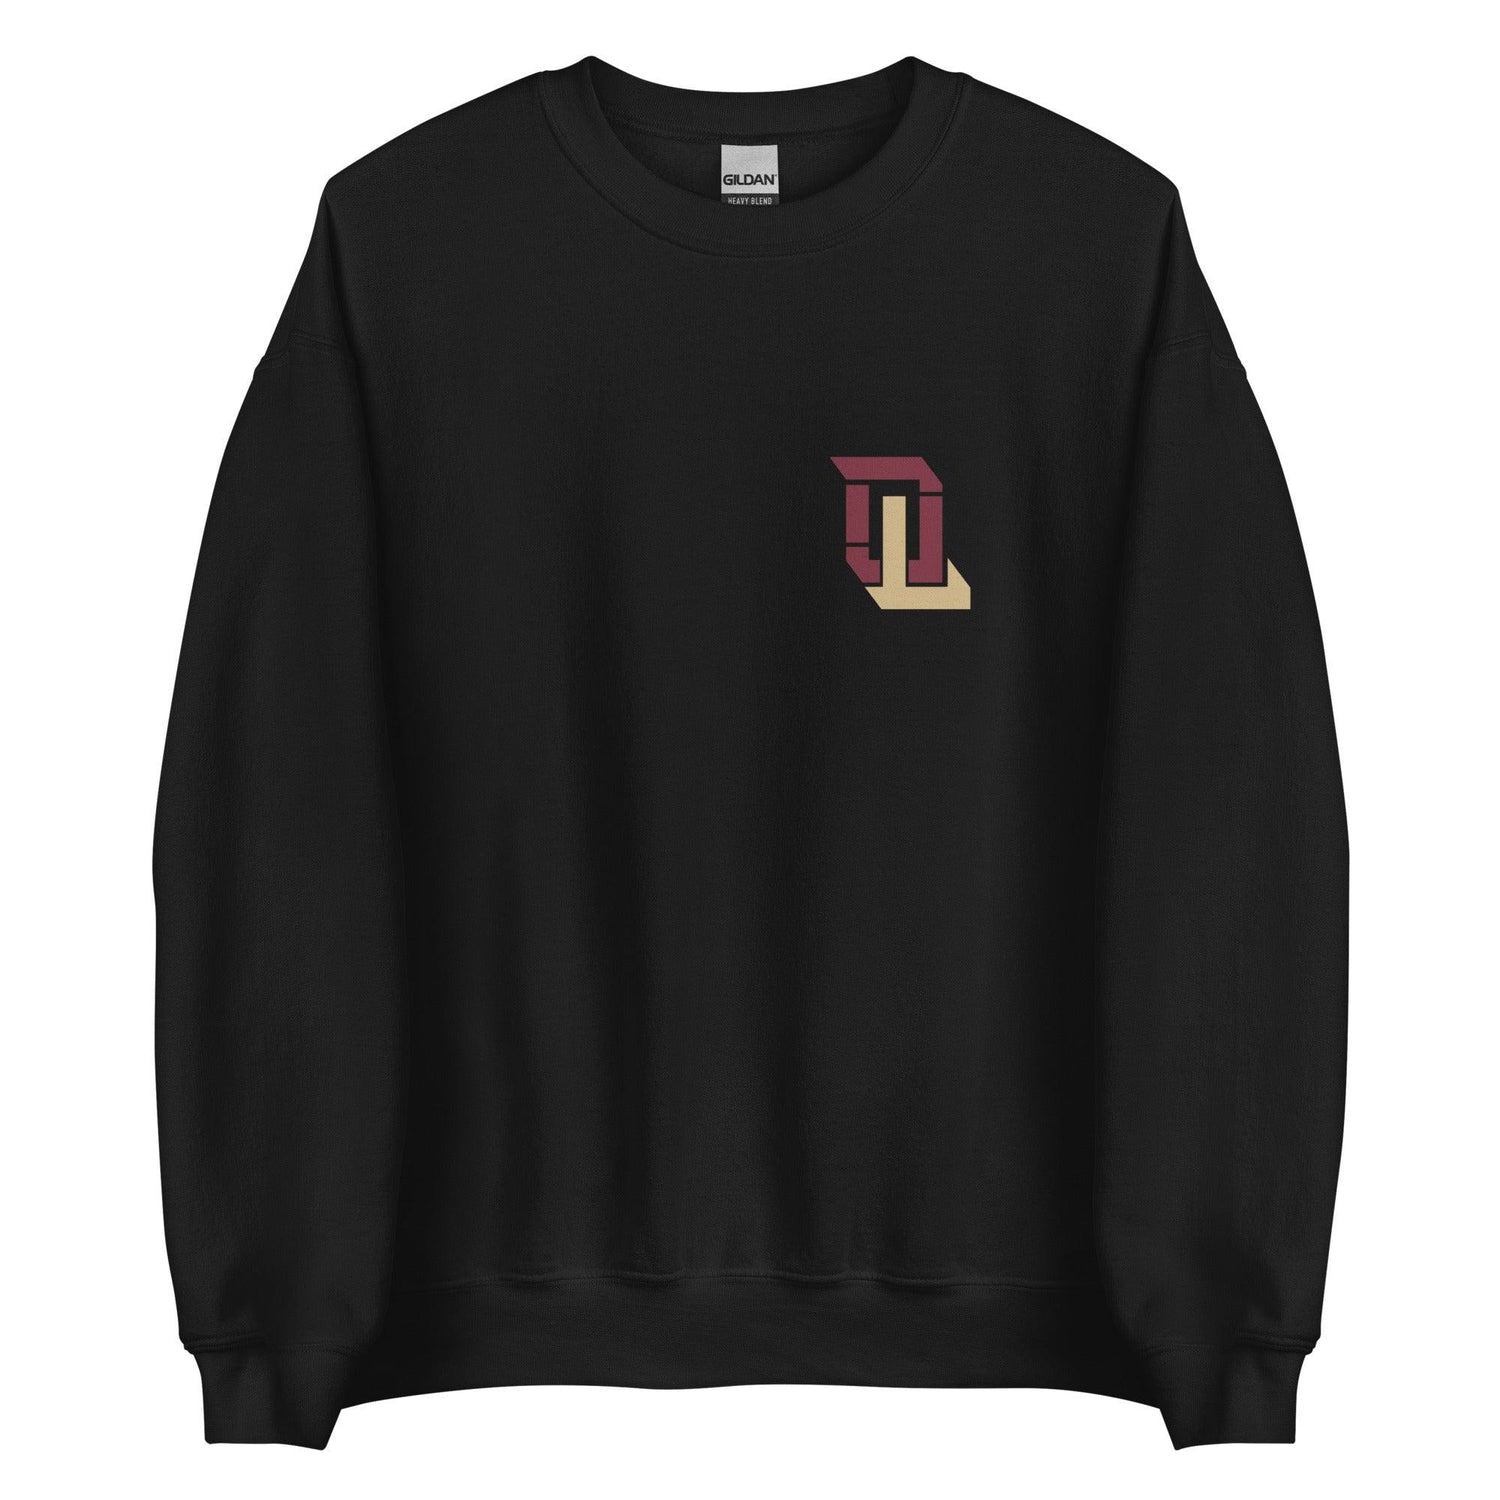 DJ Lundy "Elite" Sweatshirt - Fan Arch